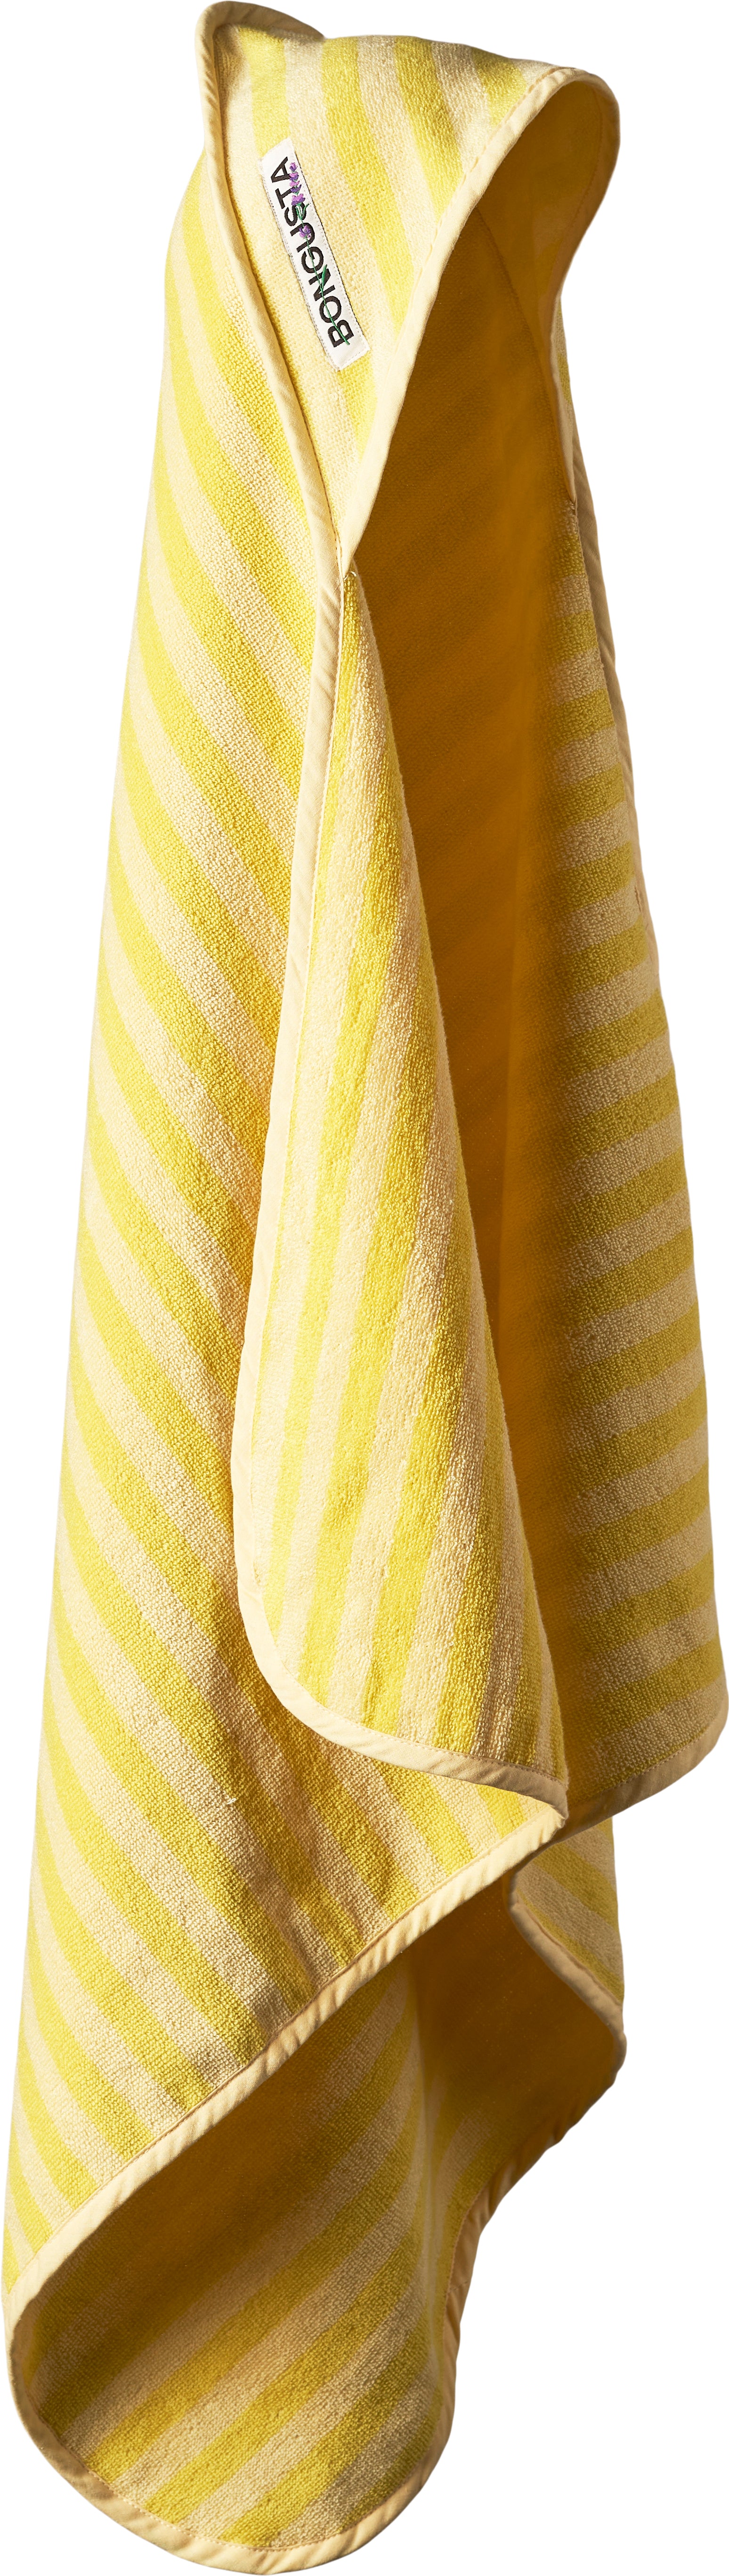 Naram Baby towel, Pristine & Neon yellow